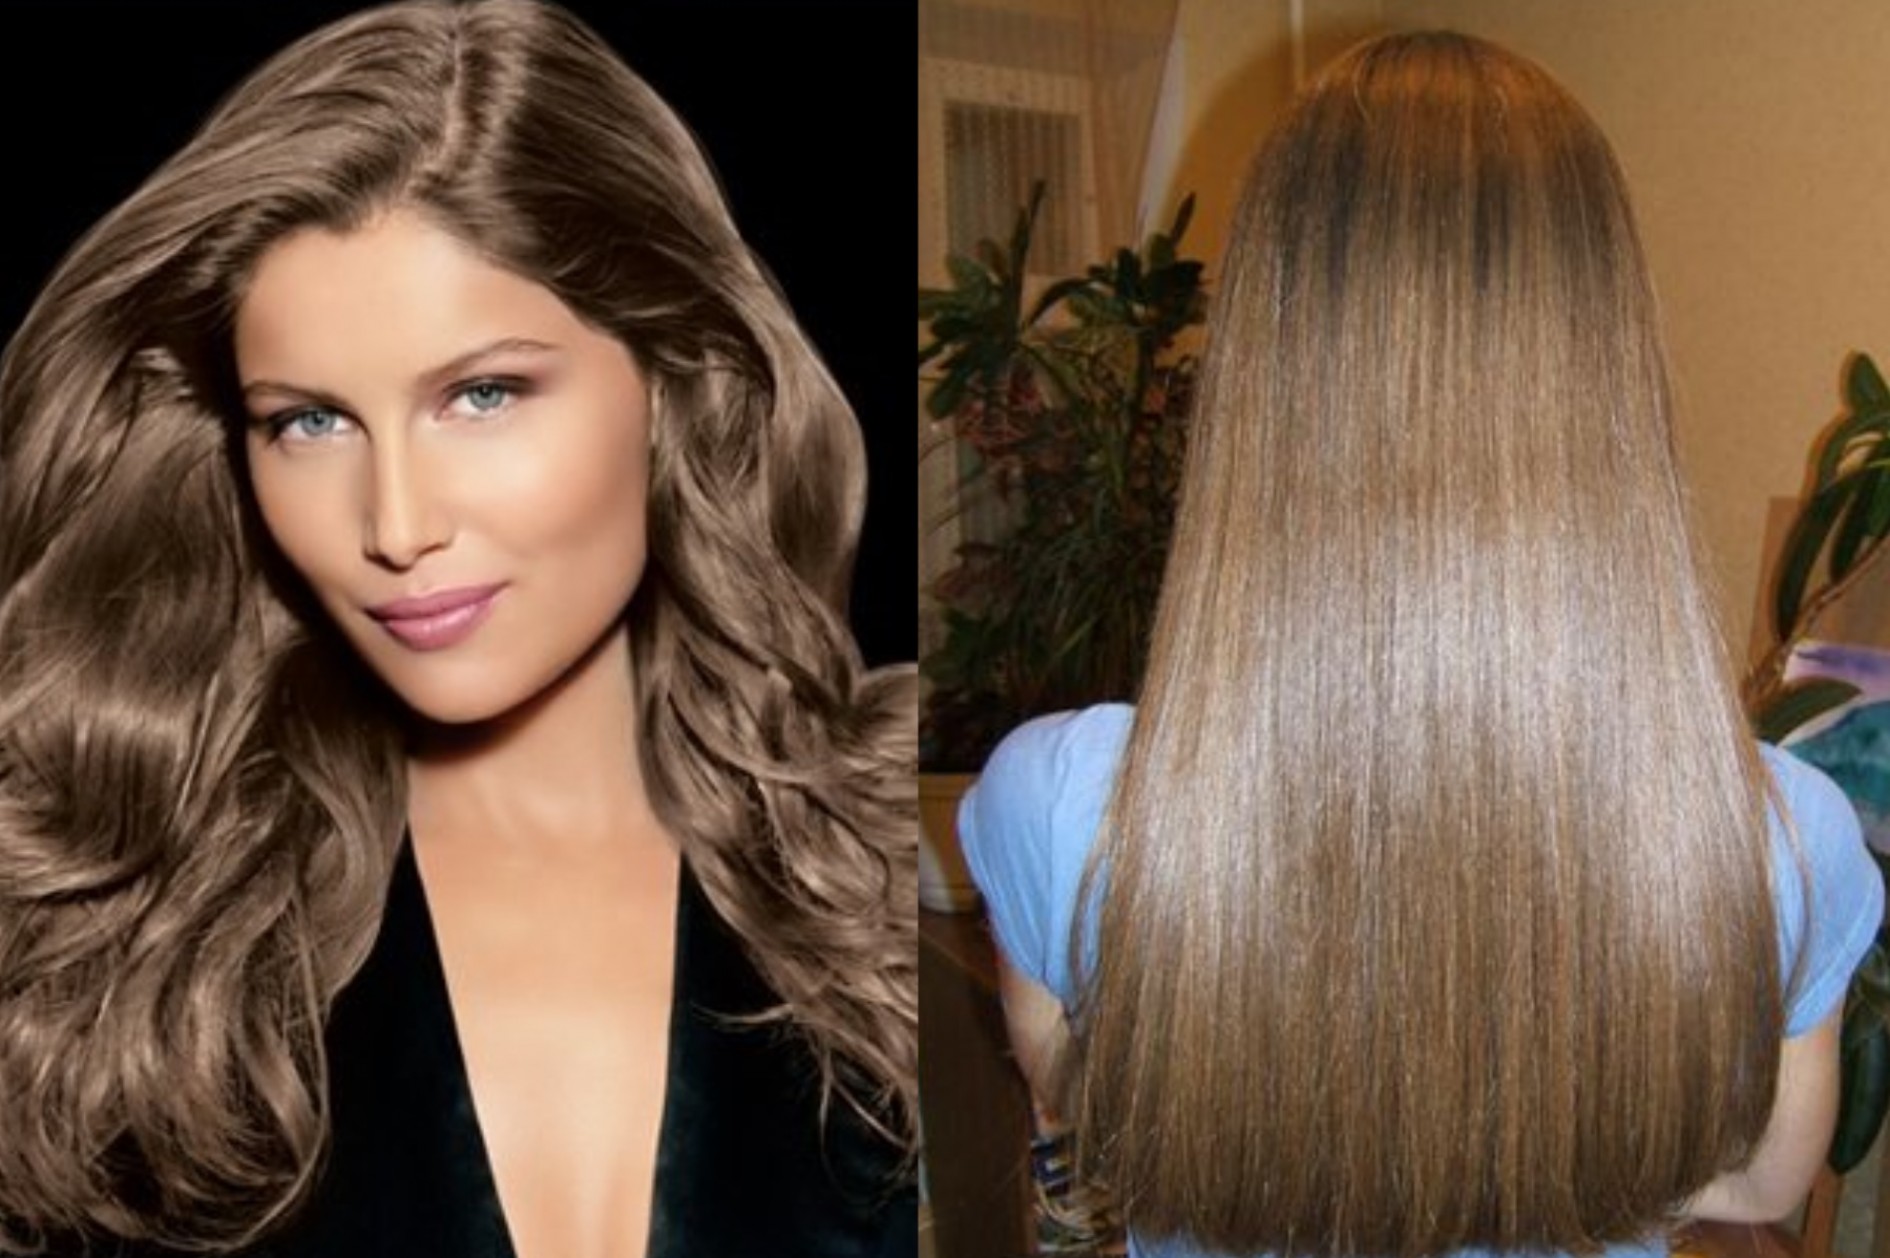 Цвет волос баклажановый на темные волосы до и после фото